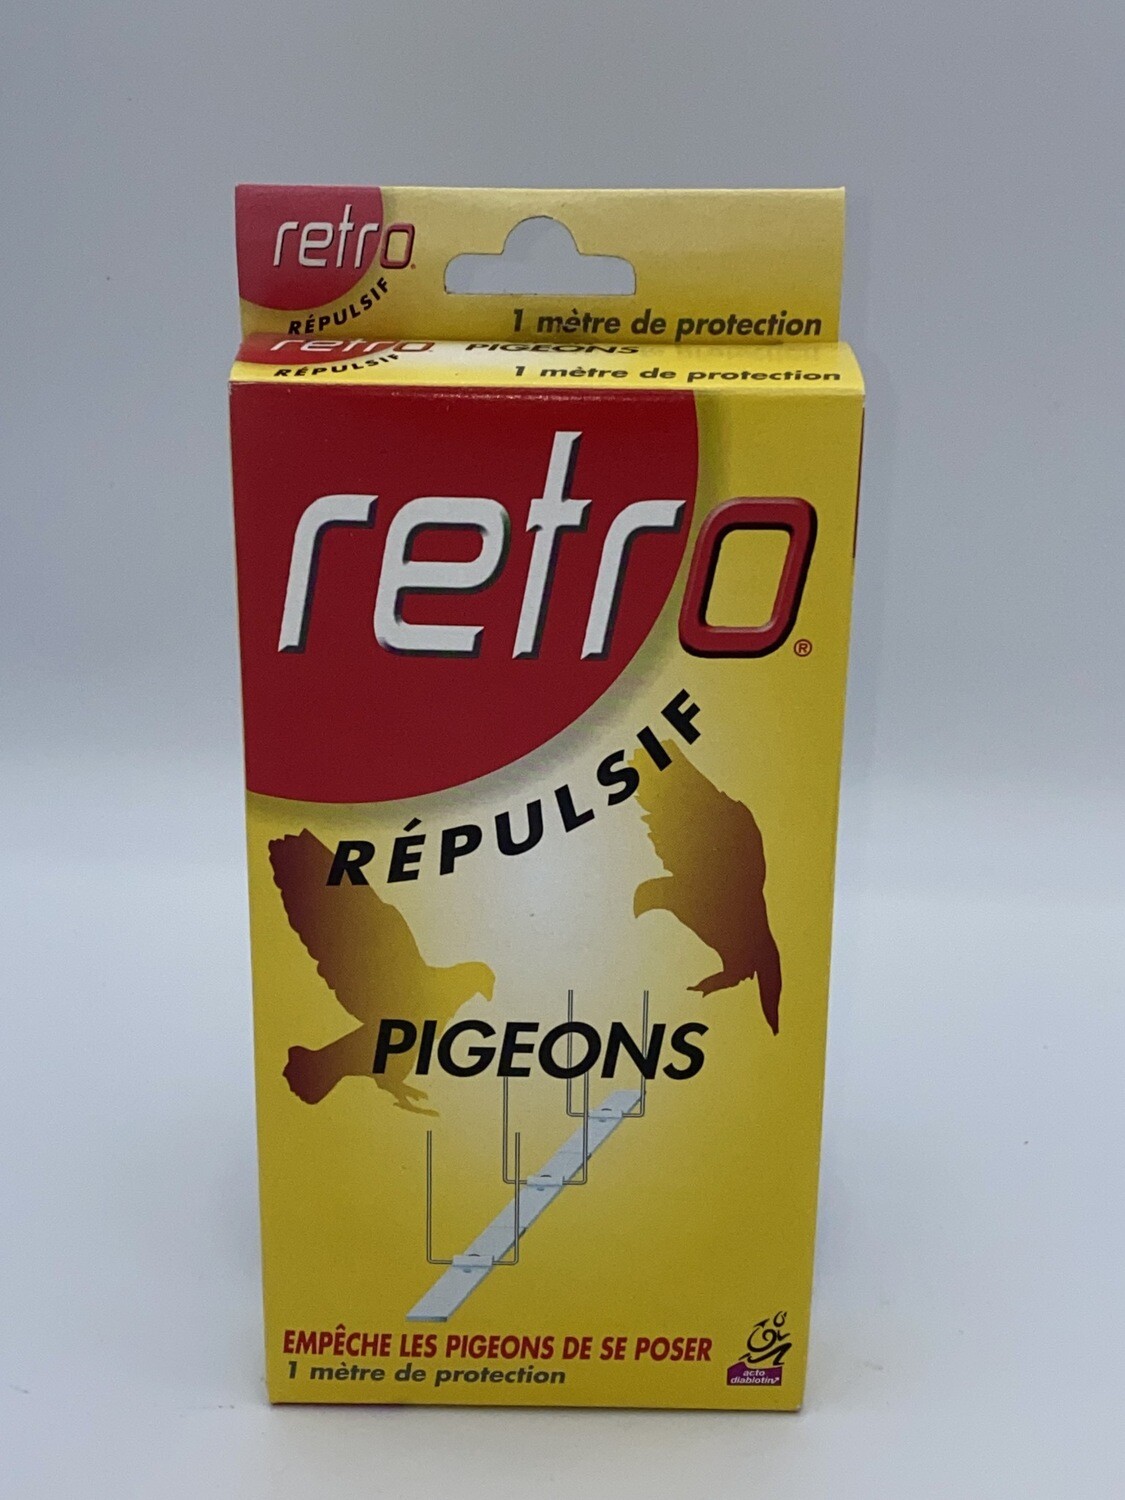 Répulsif pigeon 1 m de protection "retro"